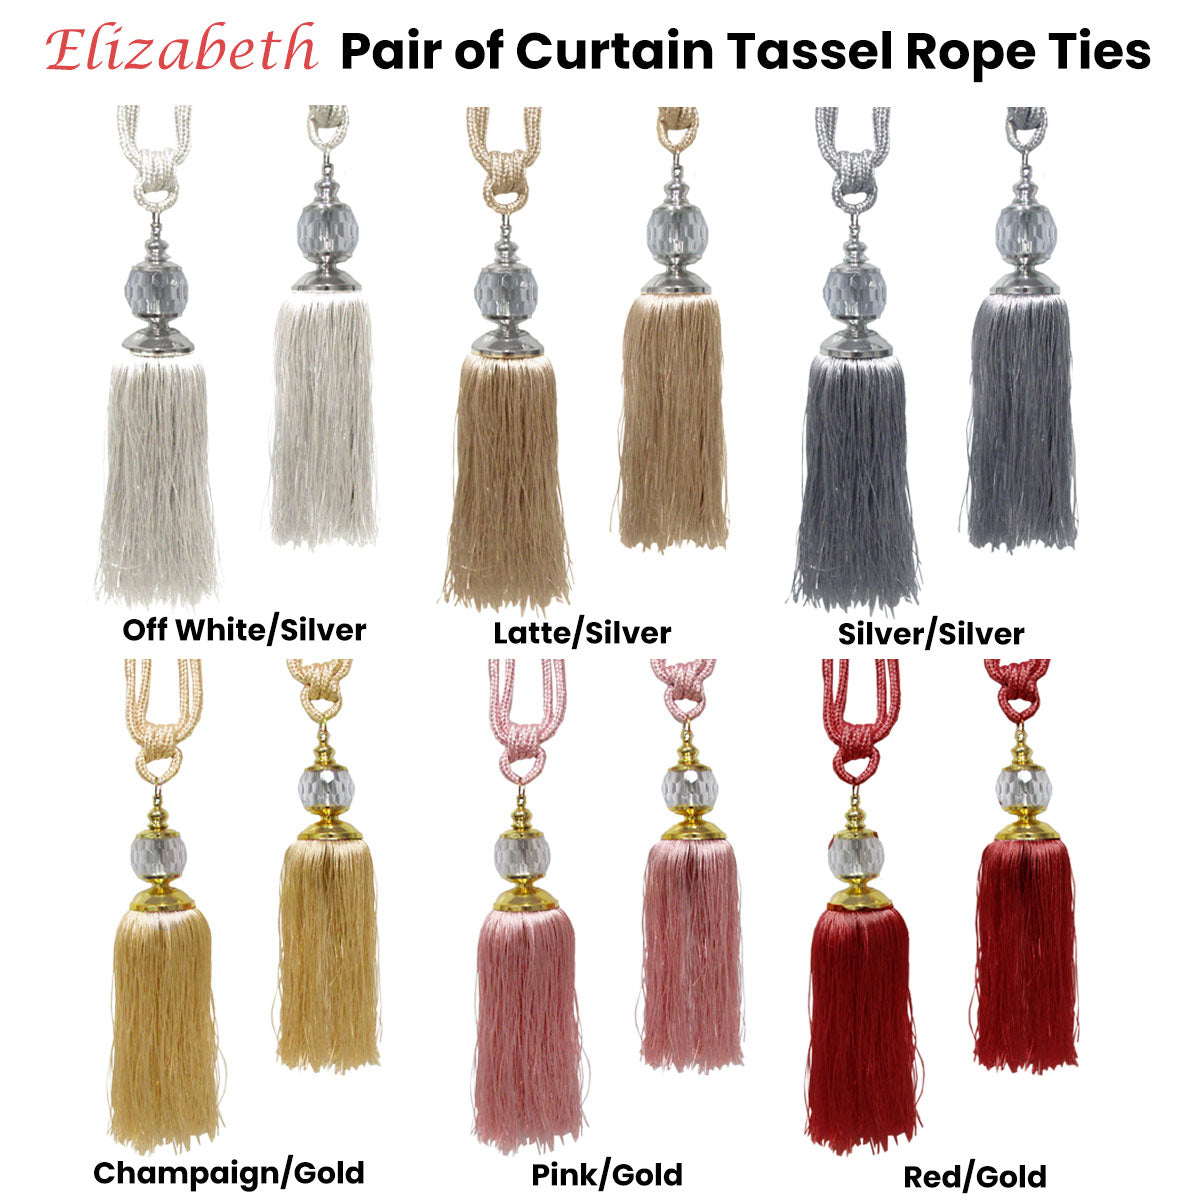 Elizabeth Pair of Curtain Tassel Rope Ties Red/Gold - 0